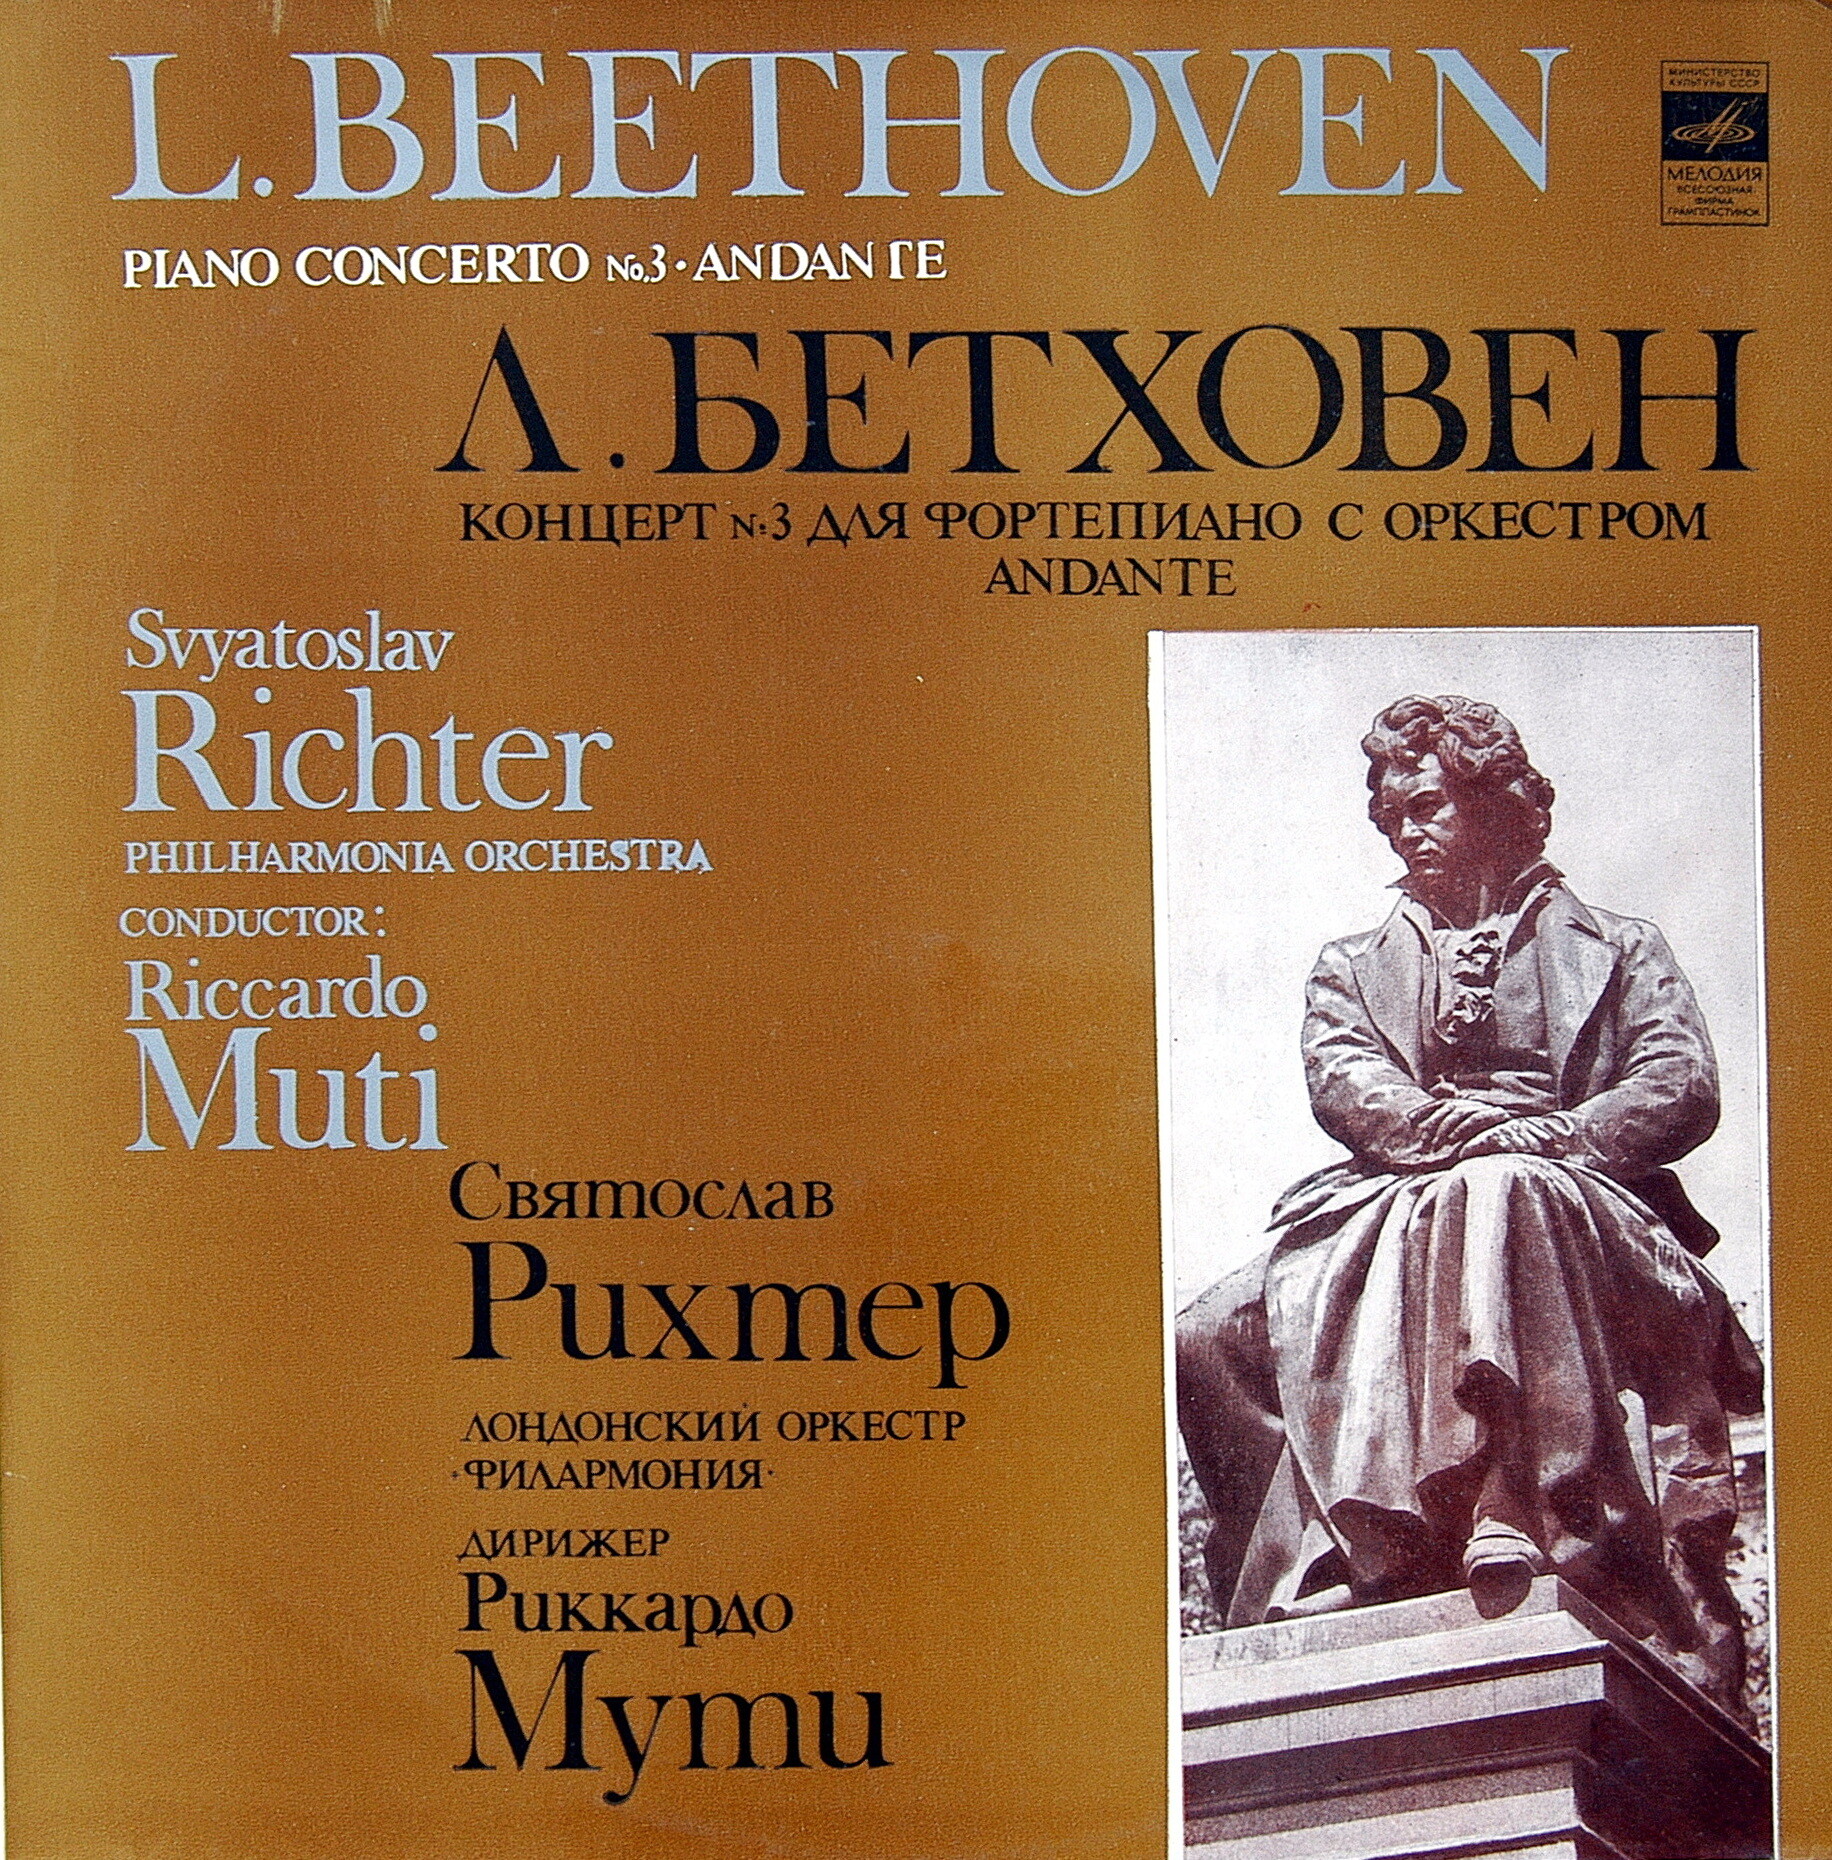 Л. Бетховен: Концерт № 3 для фортепиано с оркестром, соч. 37 (Святослав Рихтер)